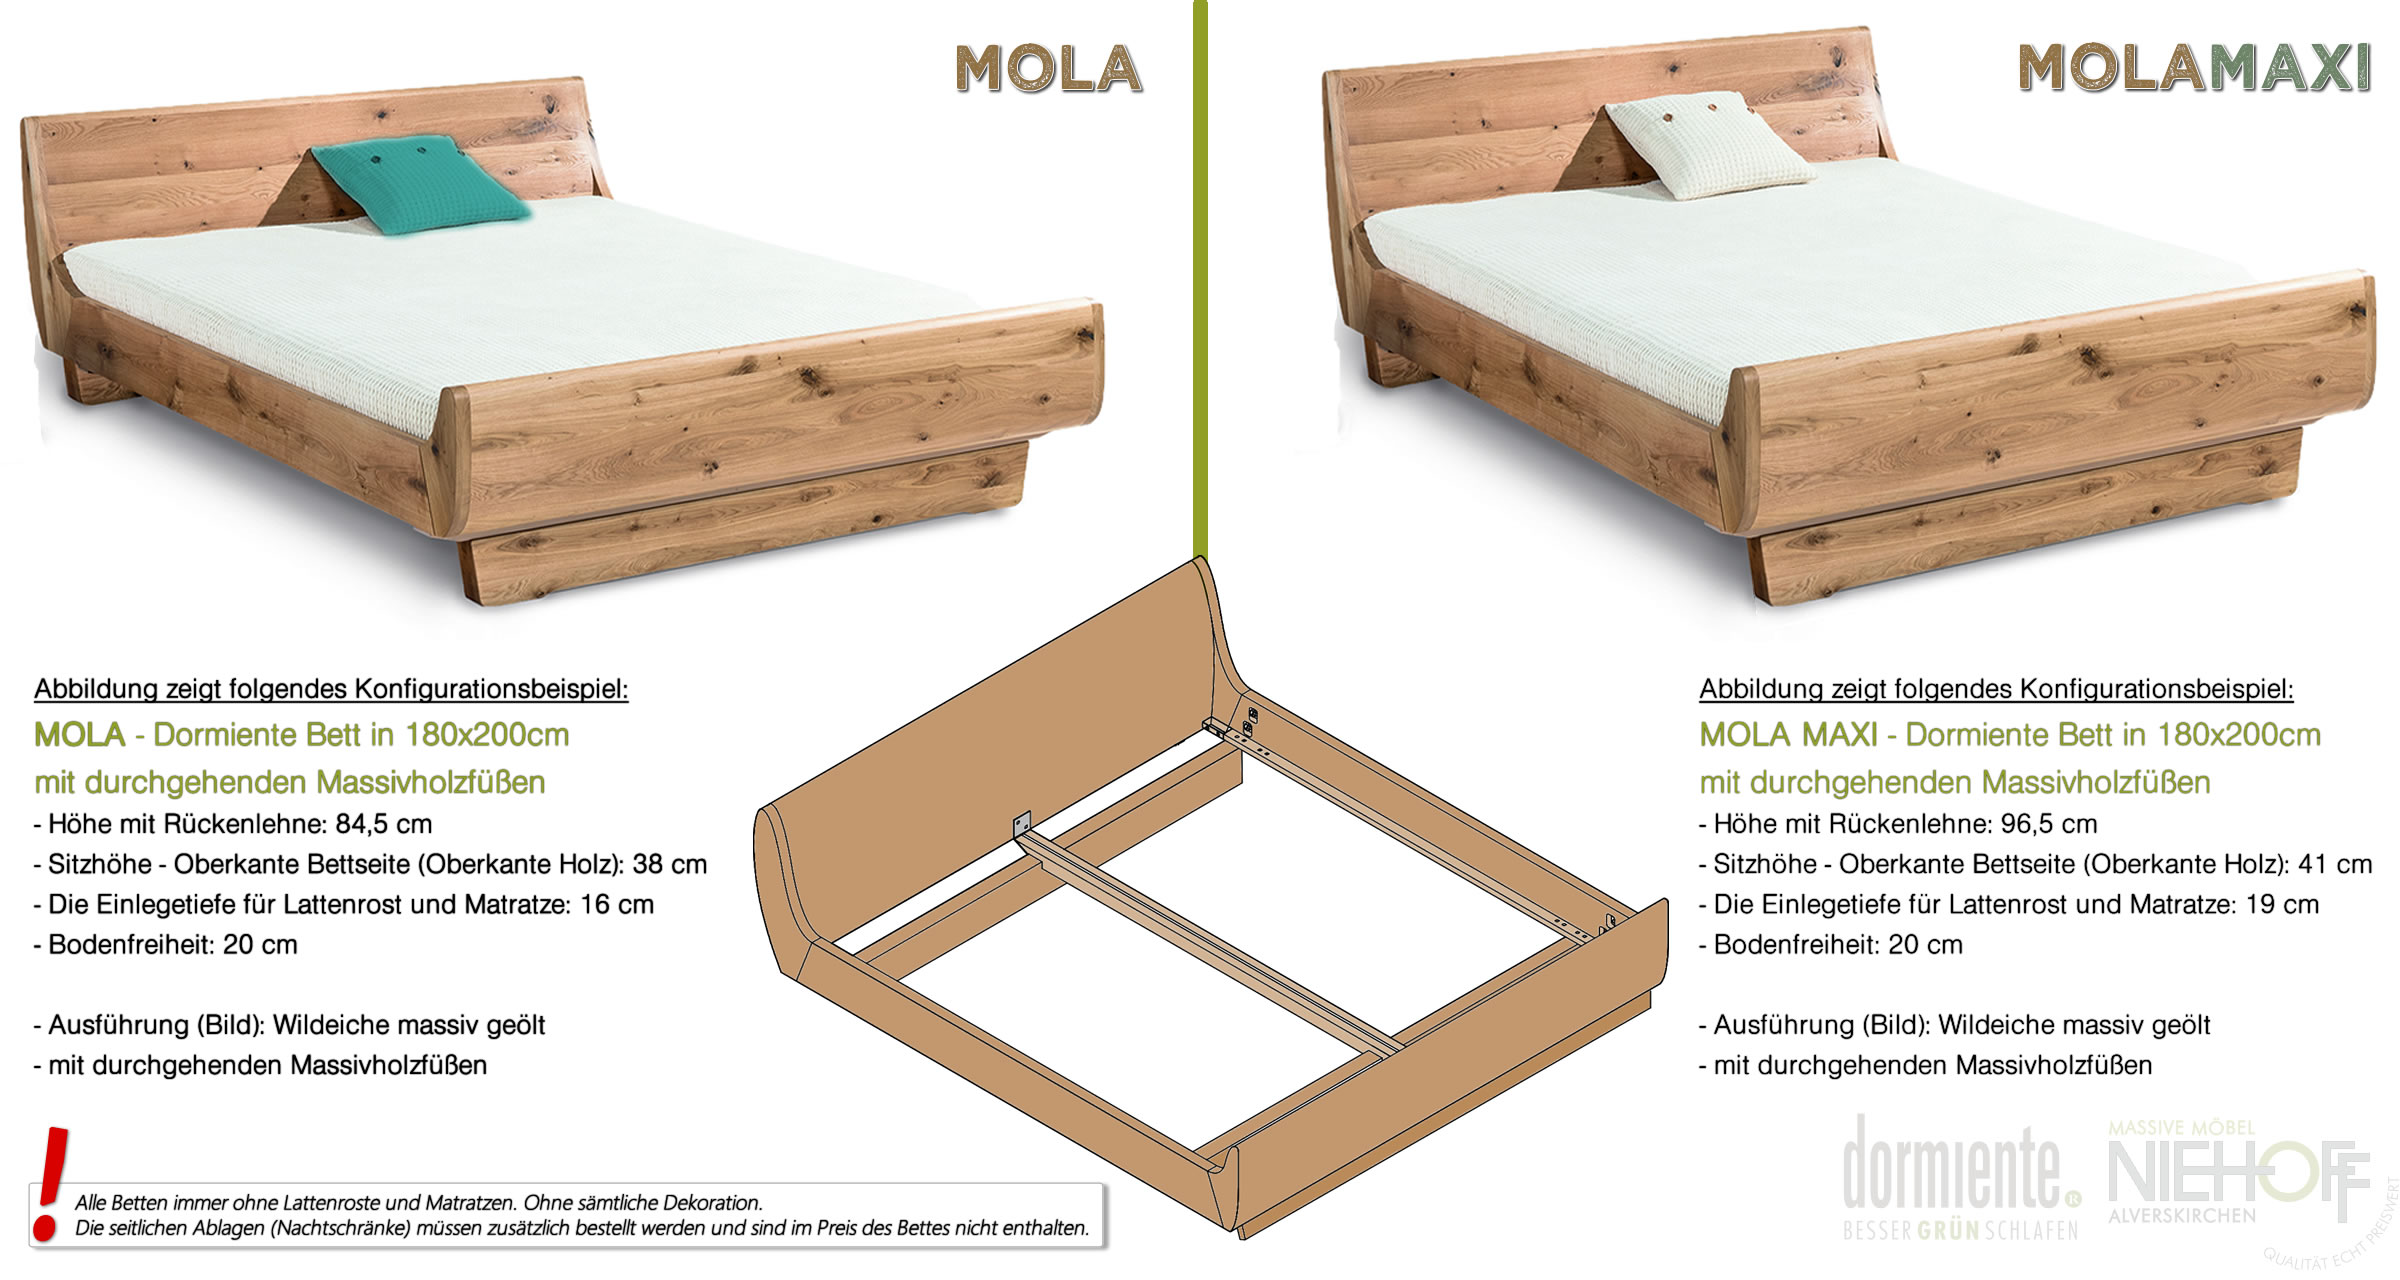 Unterschiede zwischen den Massivholzbetten Mola und Mola Maxi